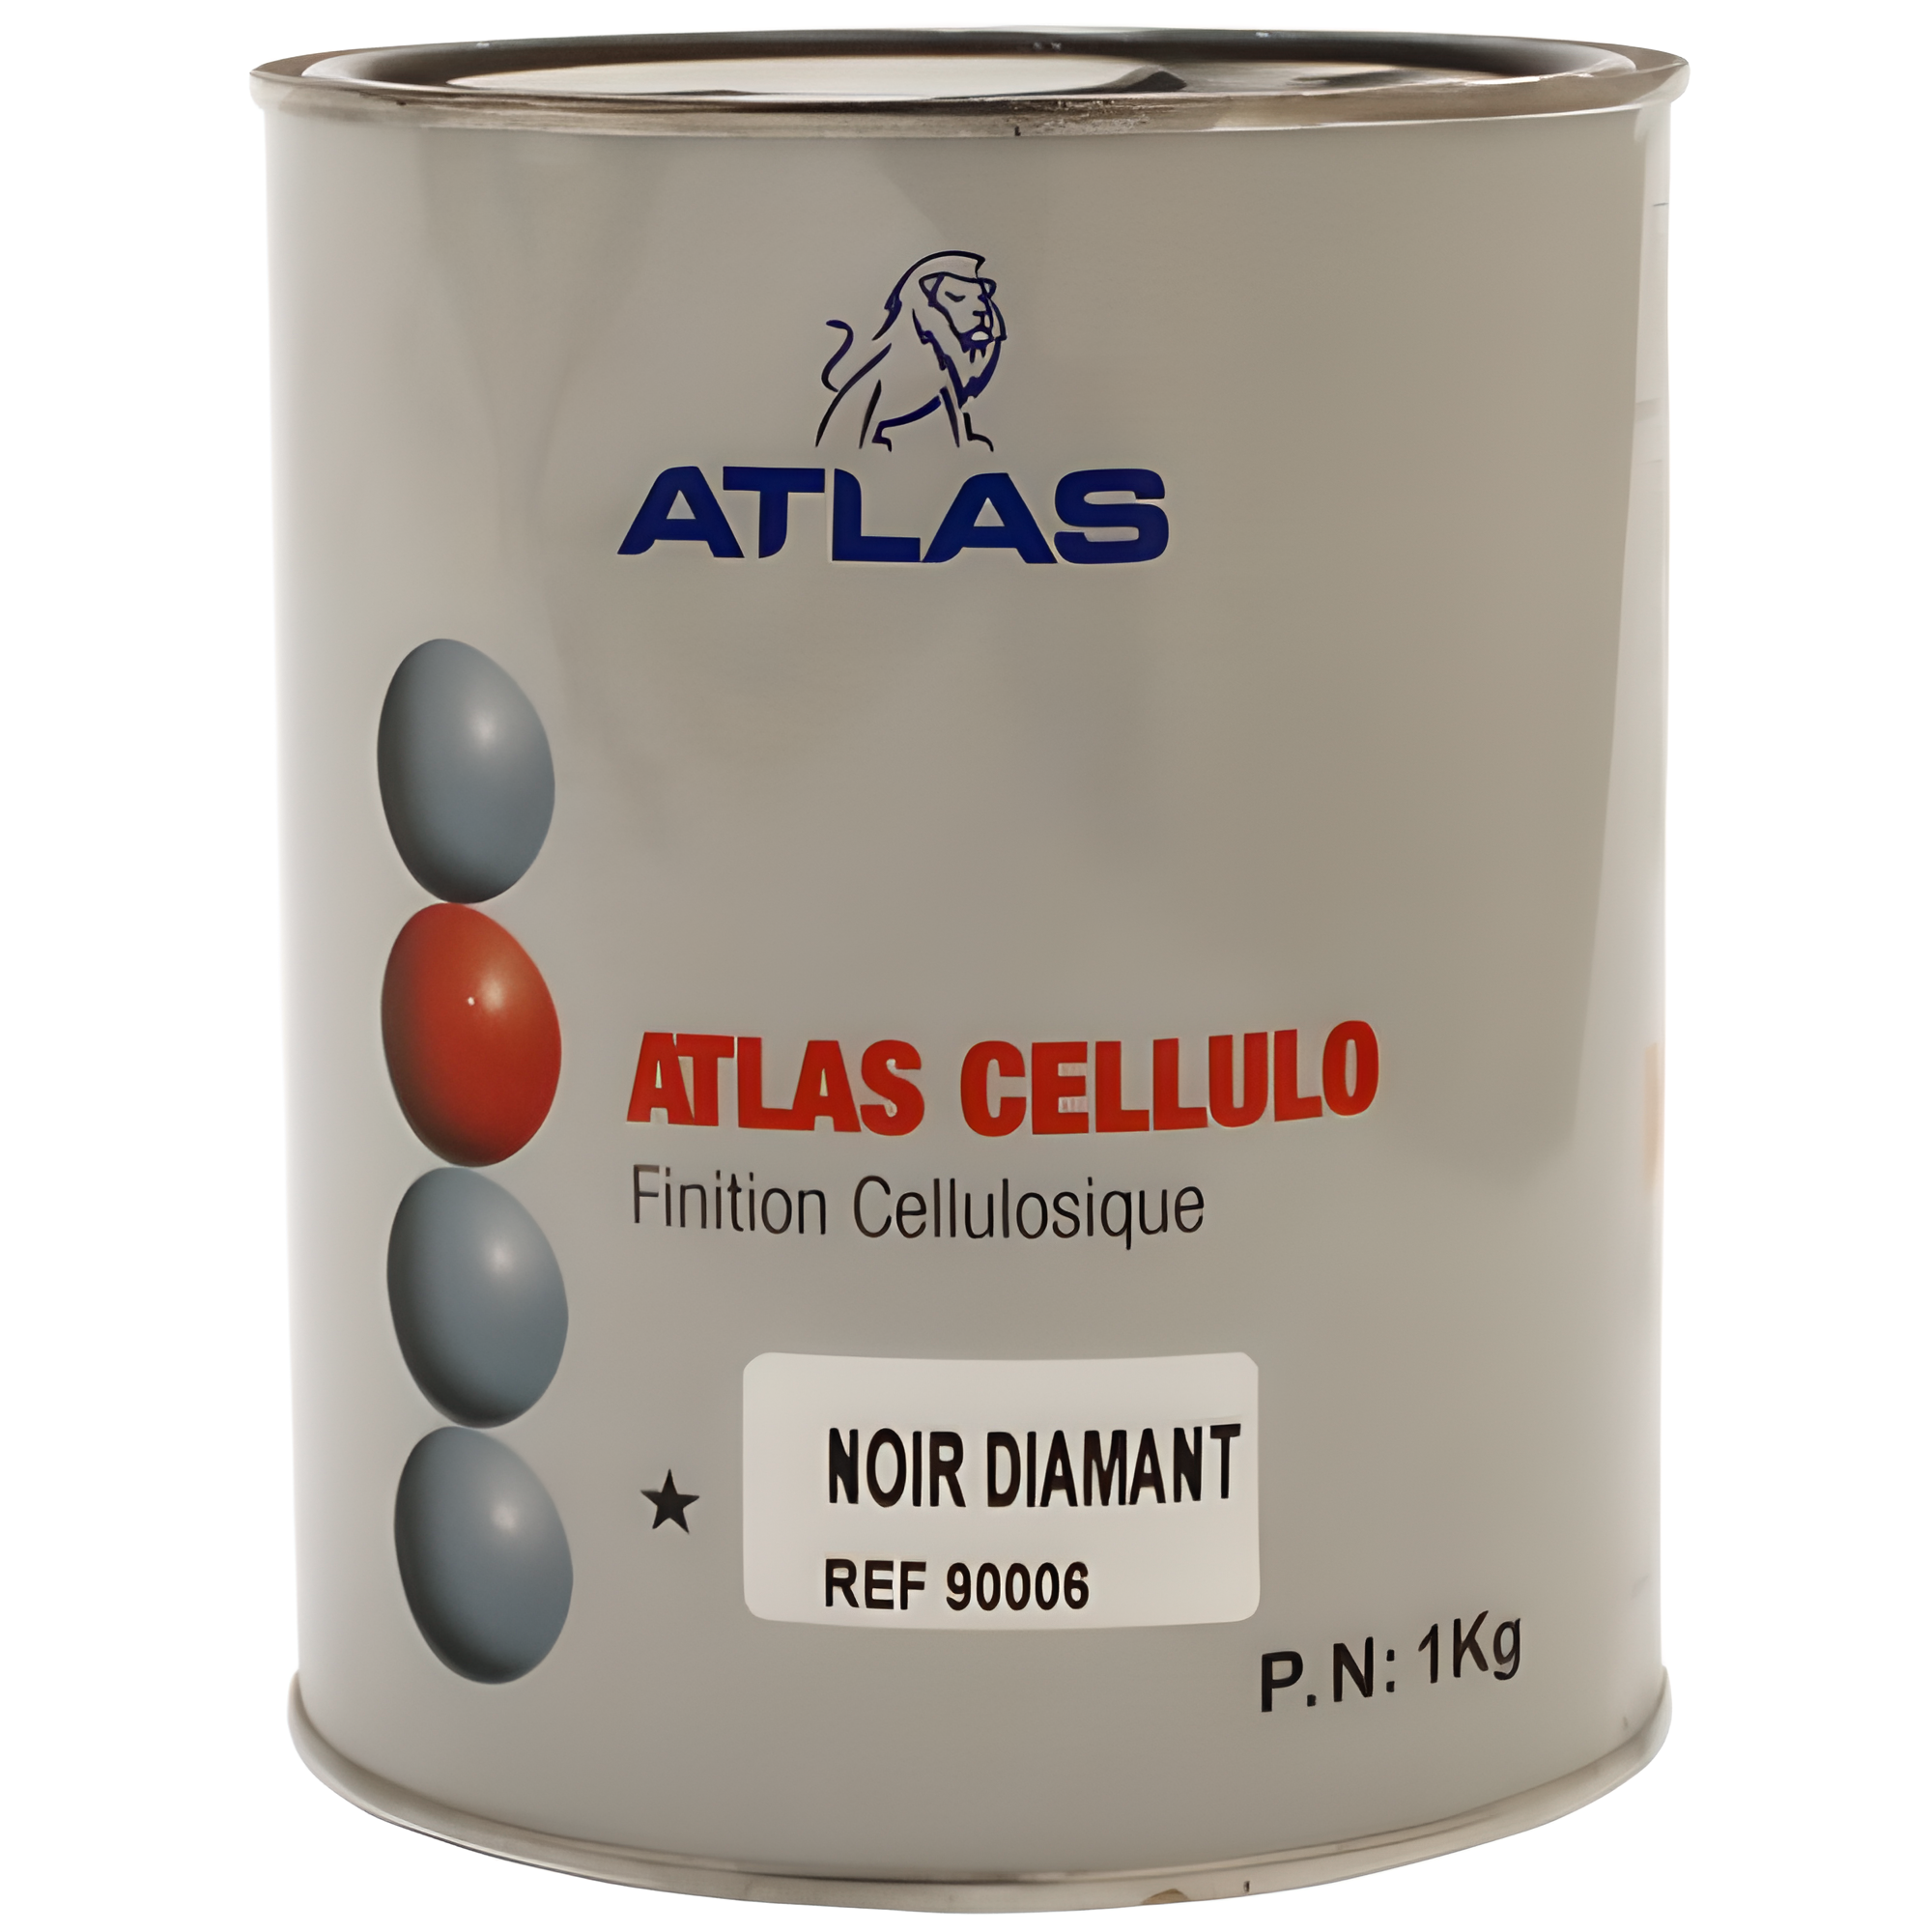 ATLAS CELLULO - FINITION CELLULOSIQUE 1 kg - Noir